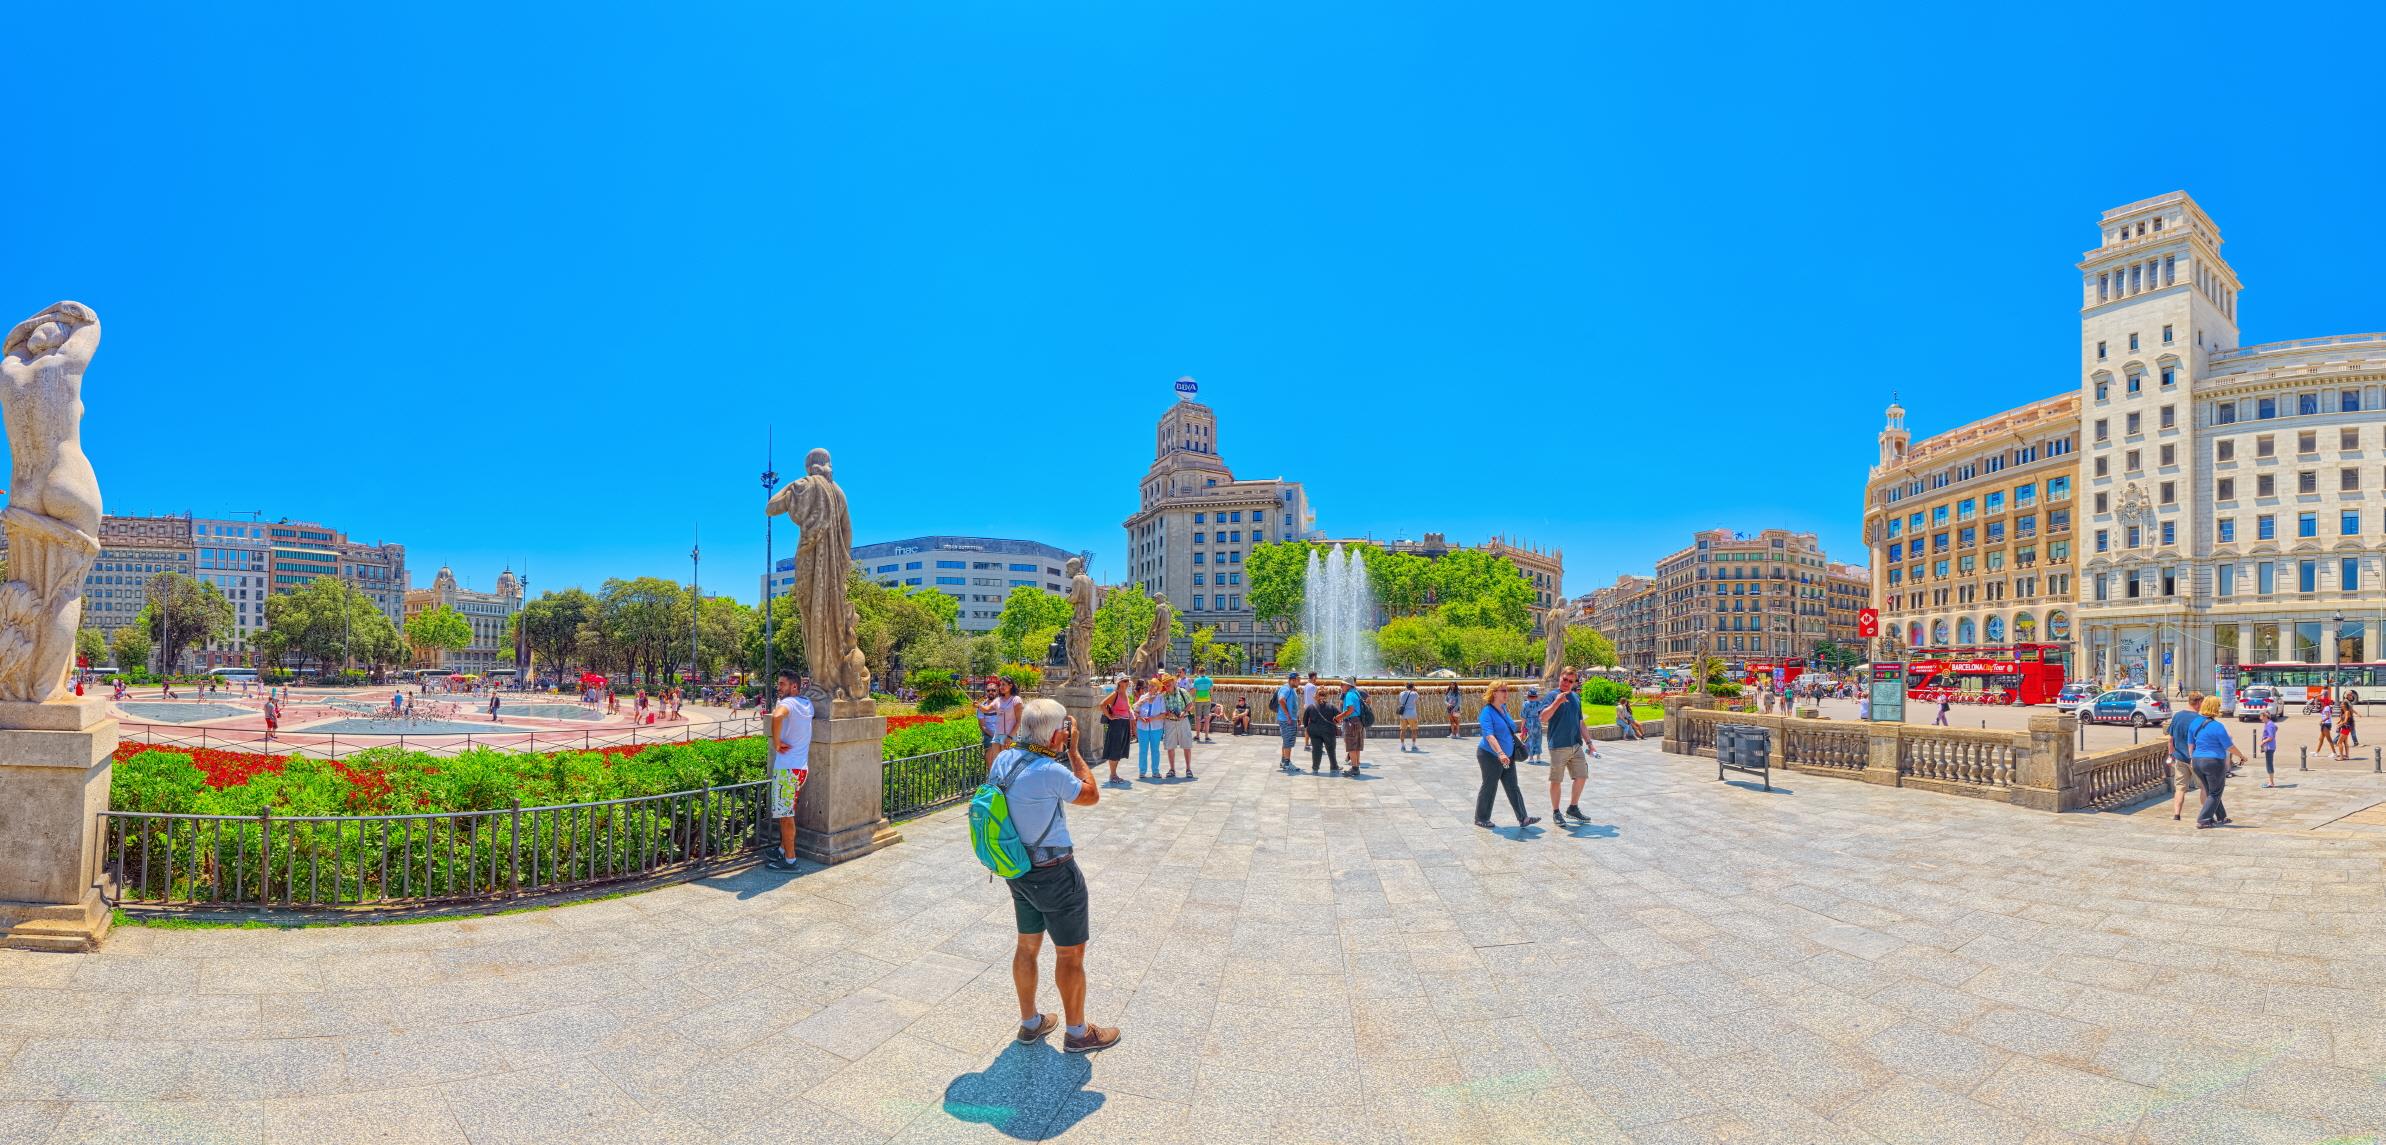 까딸루냐 광장 (Plaza de Cataluna)